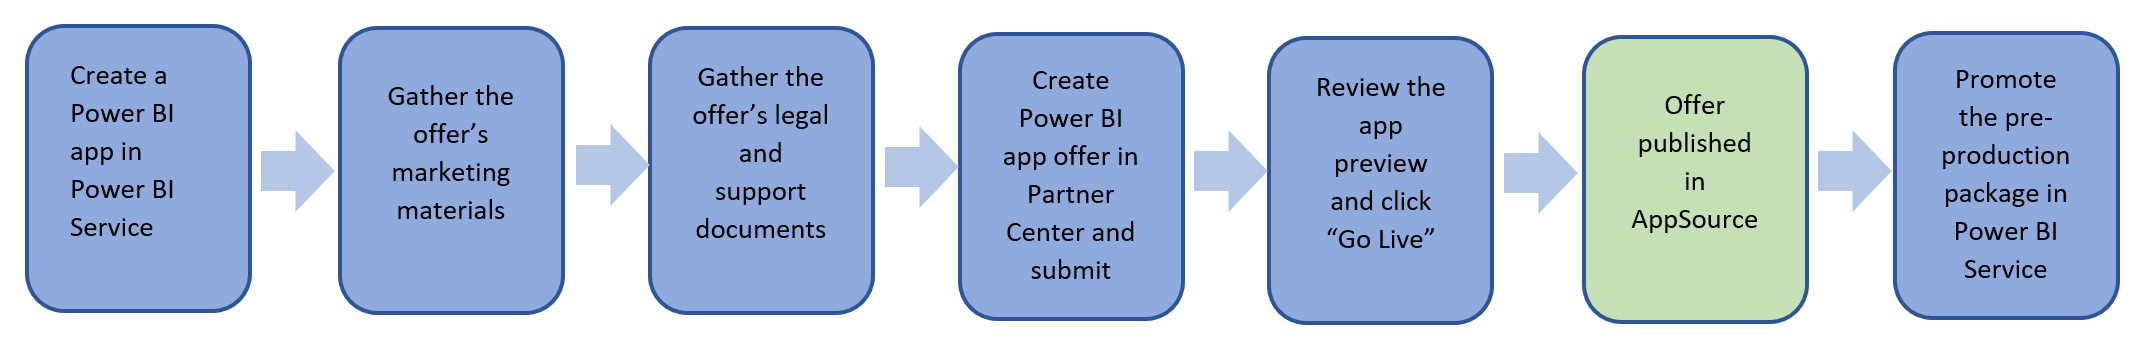 Přehled kroků k publikování nabídky aplikace Power BI